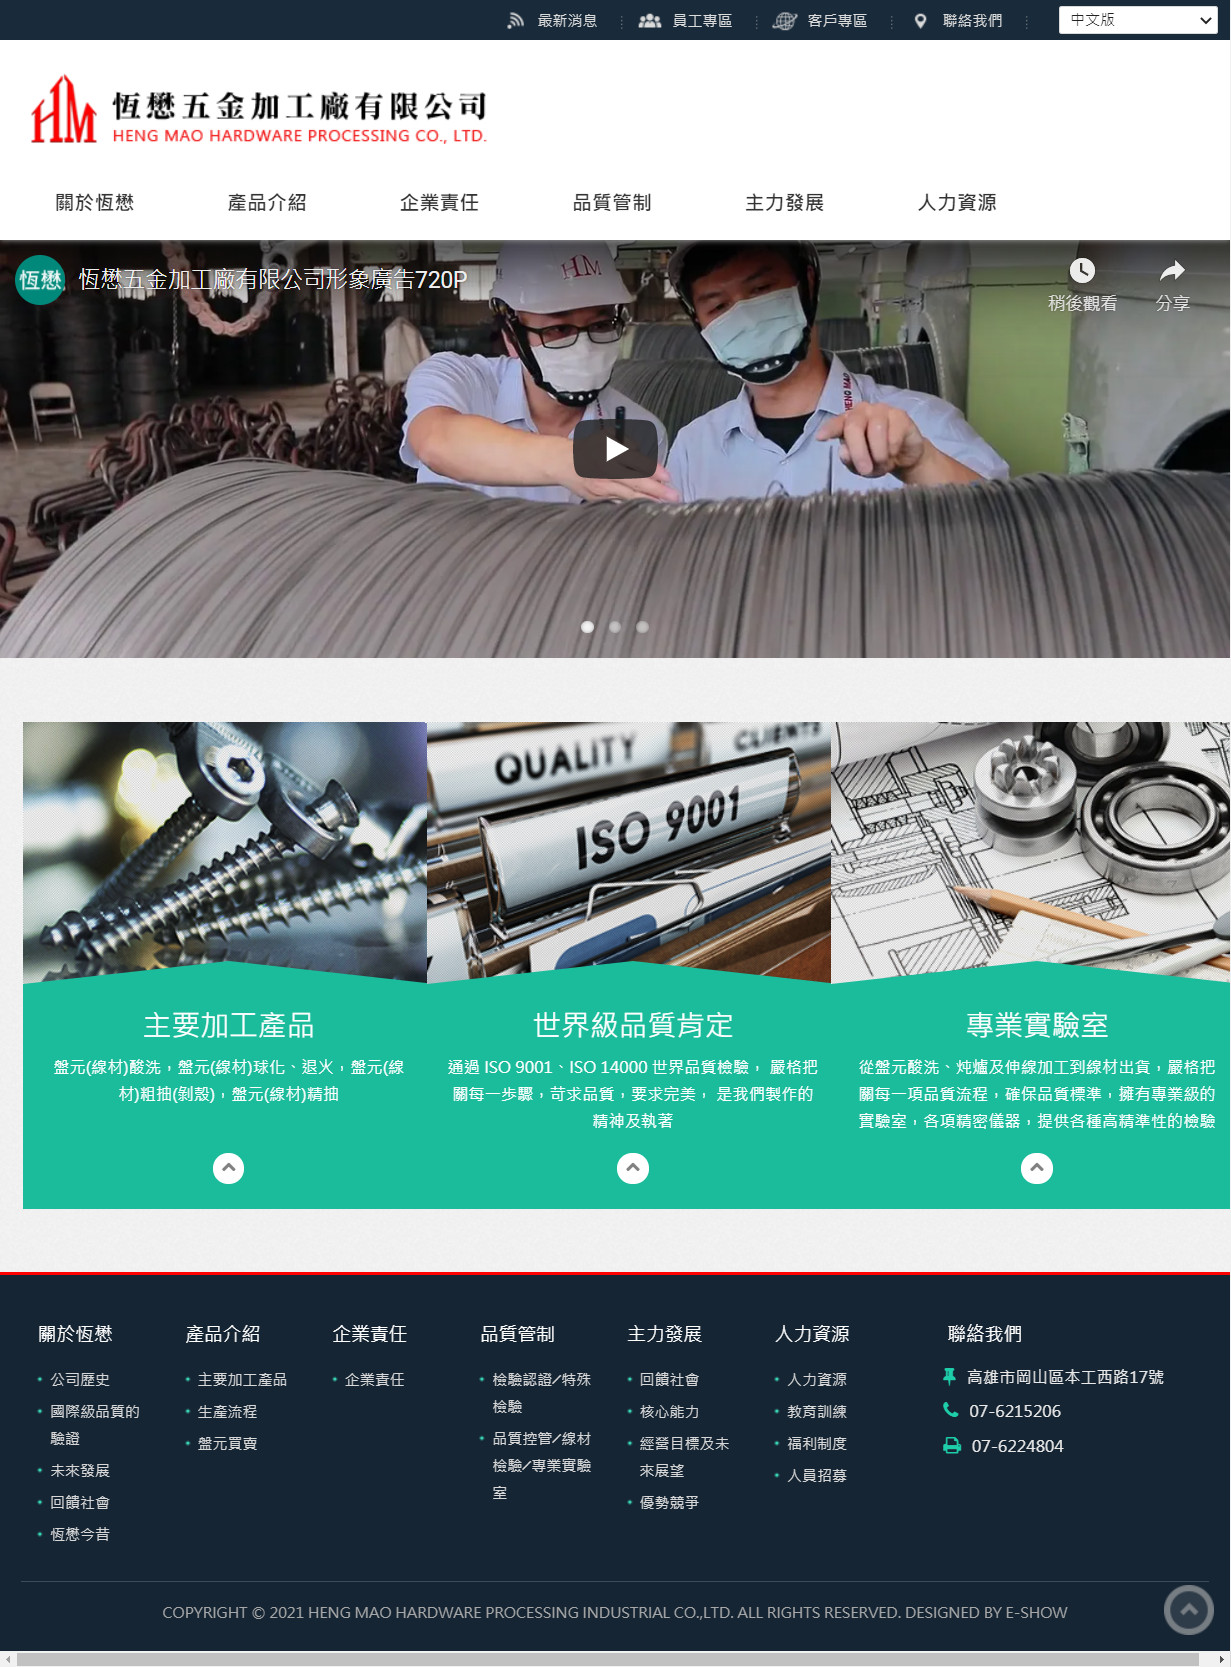 恆懋五金加工廠有限公司 客製化響應式網站設計
網站設計